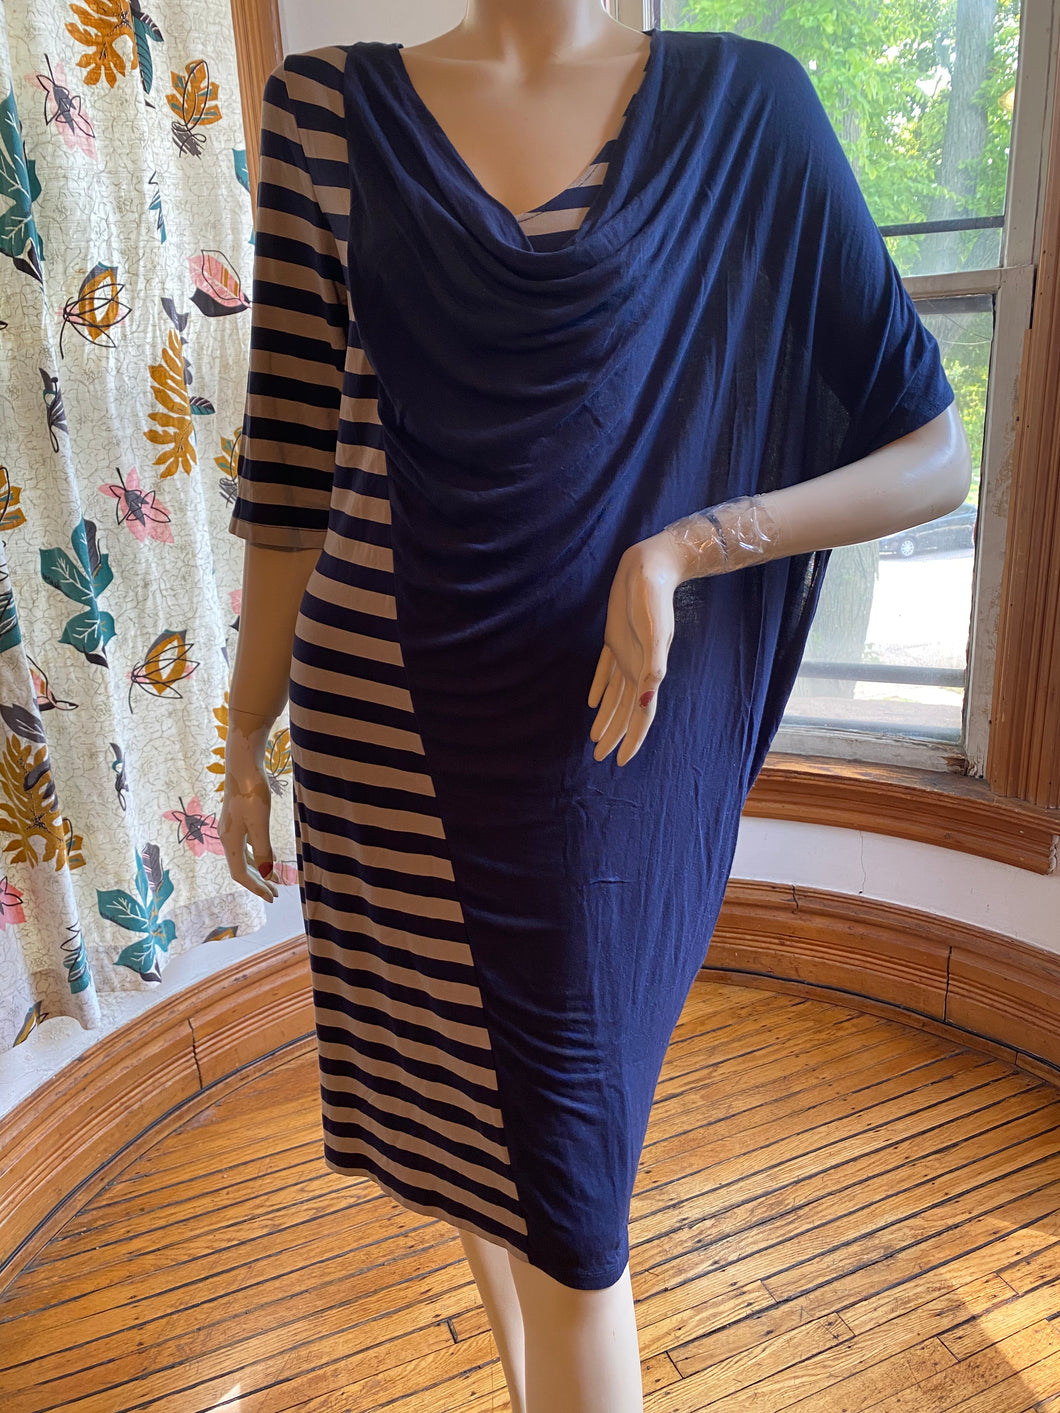 Ronen Chen Blue/Taupe Draped/Striped Asymmetrical Knit Dress, size M/L (Brand size 3)